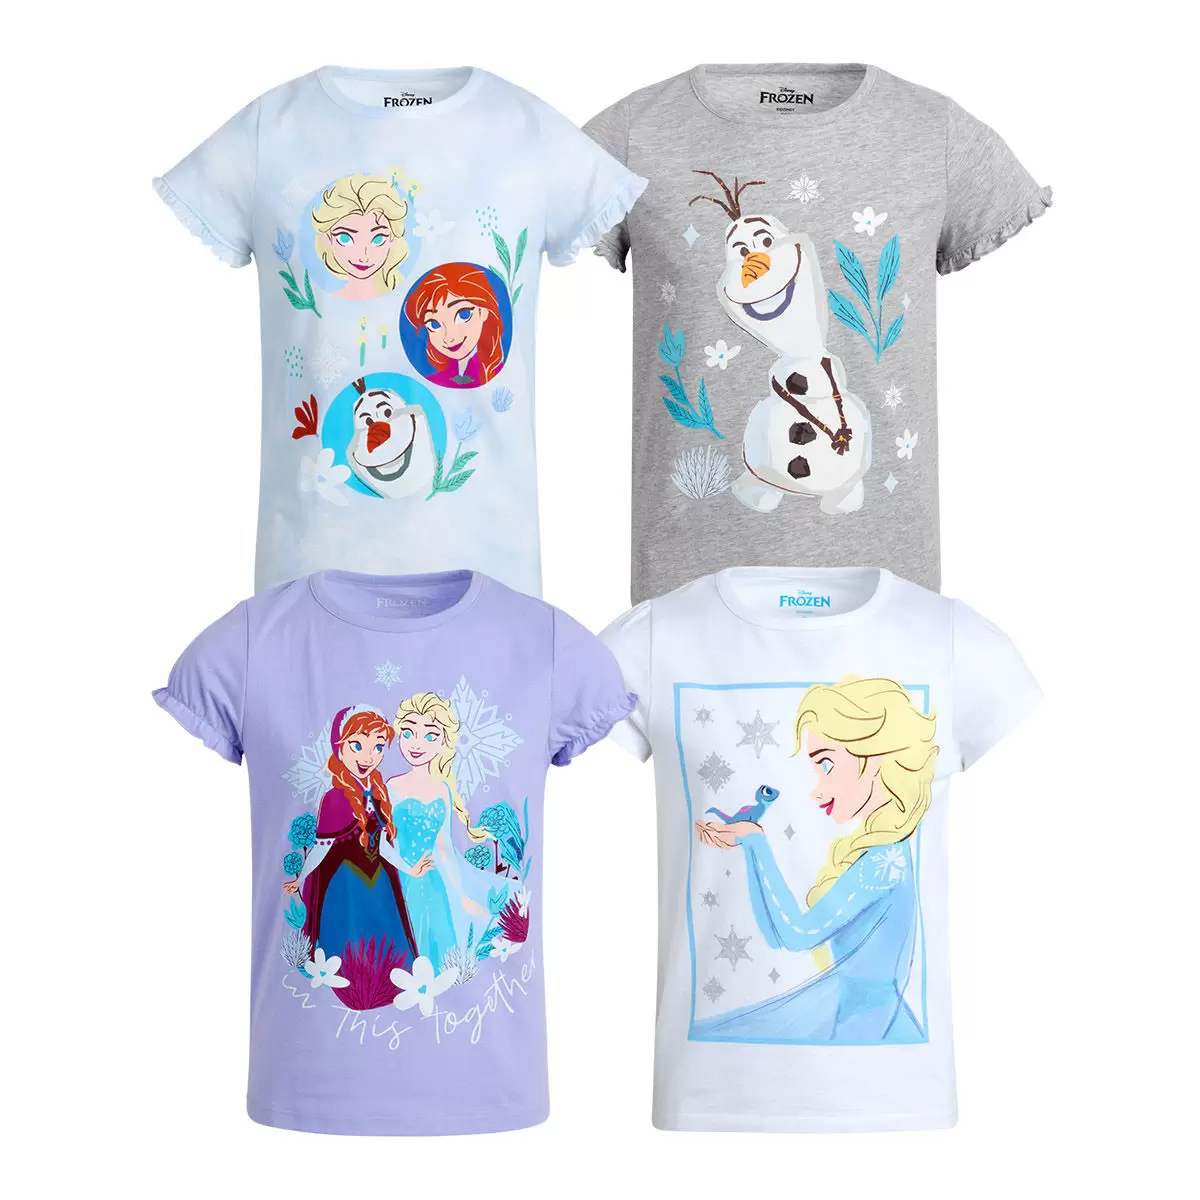 兒童卡通圖案短袖上衣四件組 Frozen 7T